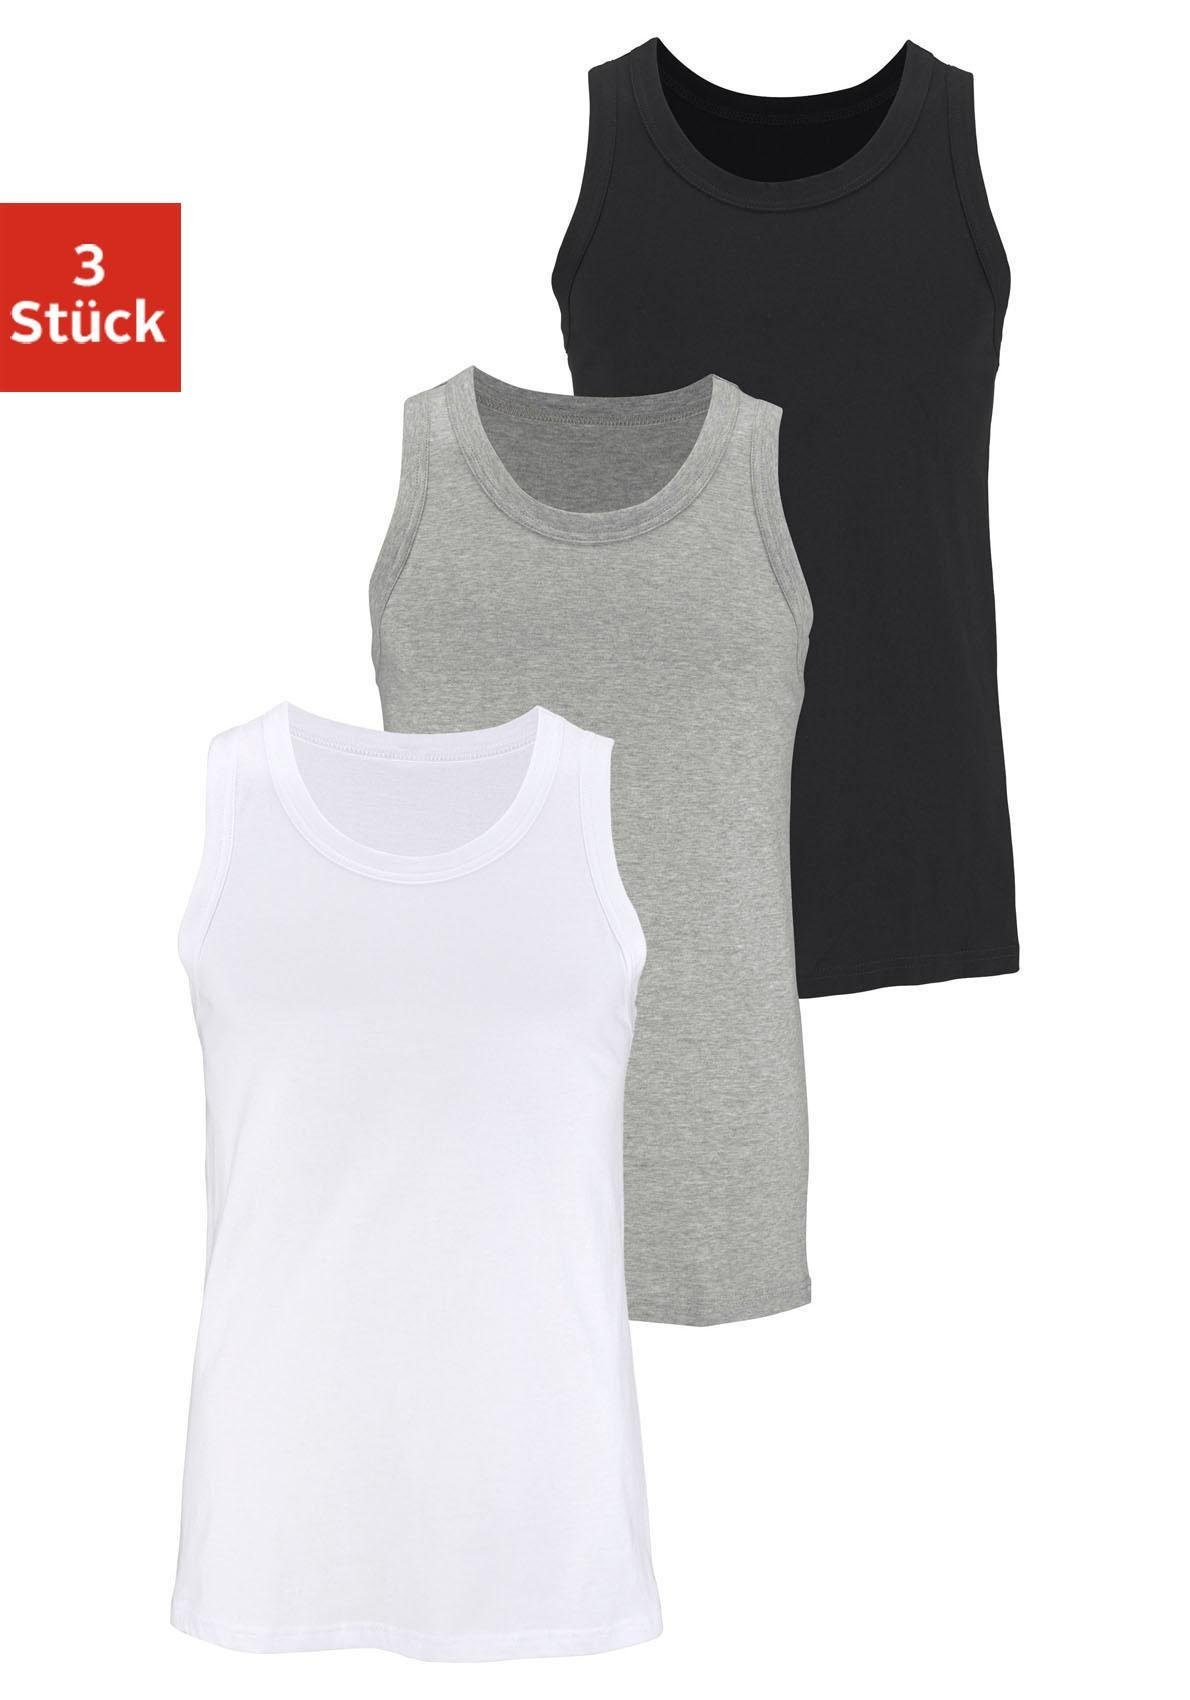 H.I.S Tanktop (Packung, 3-tlg) aus Baumwolle grau-meliert, weiß, schwarz | Ärmellose Unterhemden